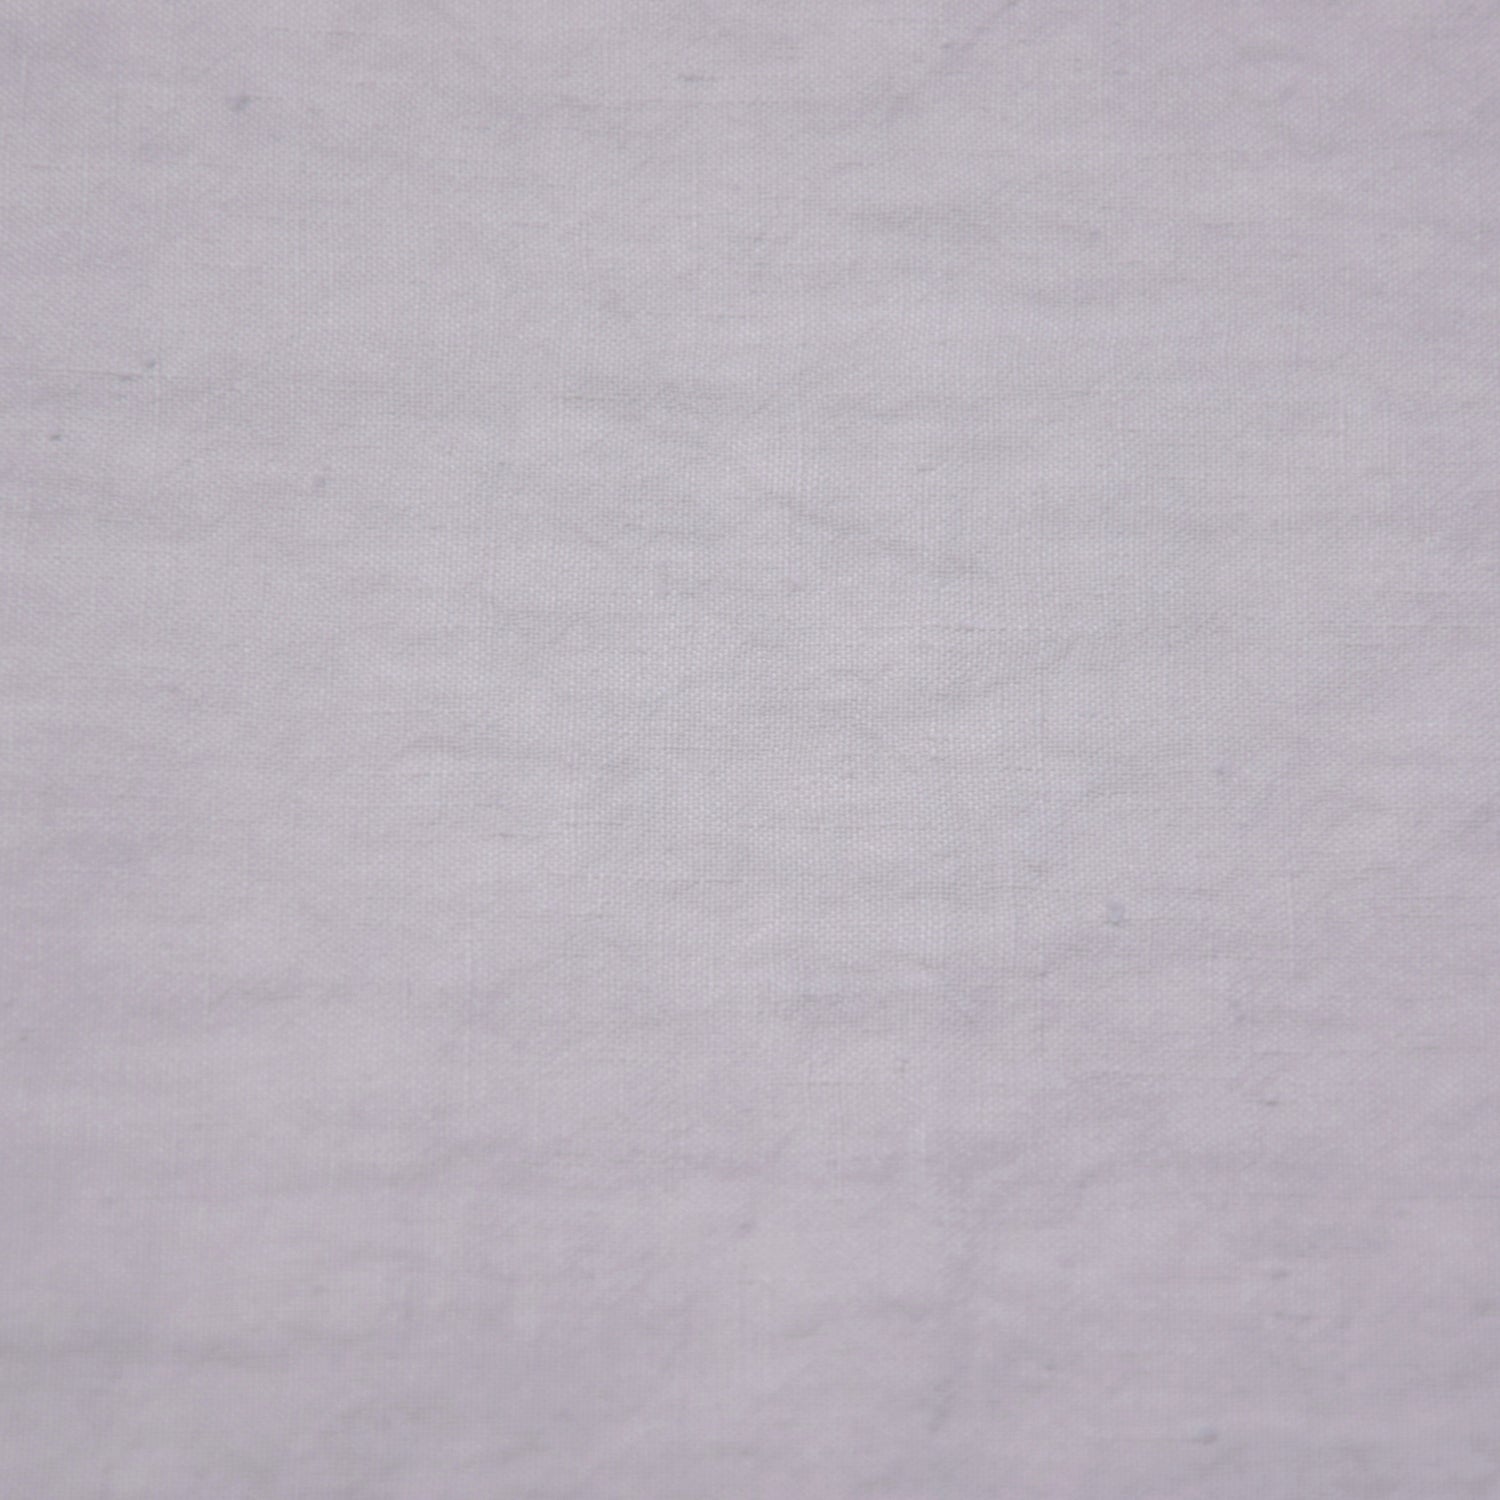 ナプキン　ハンカチ　ハンドタオル　麻　リネン　フレンチリネン　フランス製　ライトグレー　グレー　オフホワイト　ナチュラル色